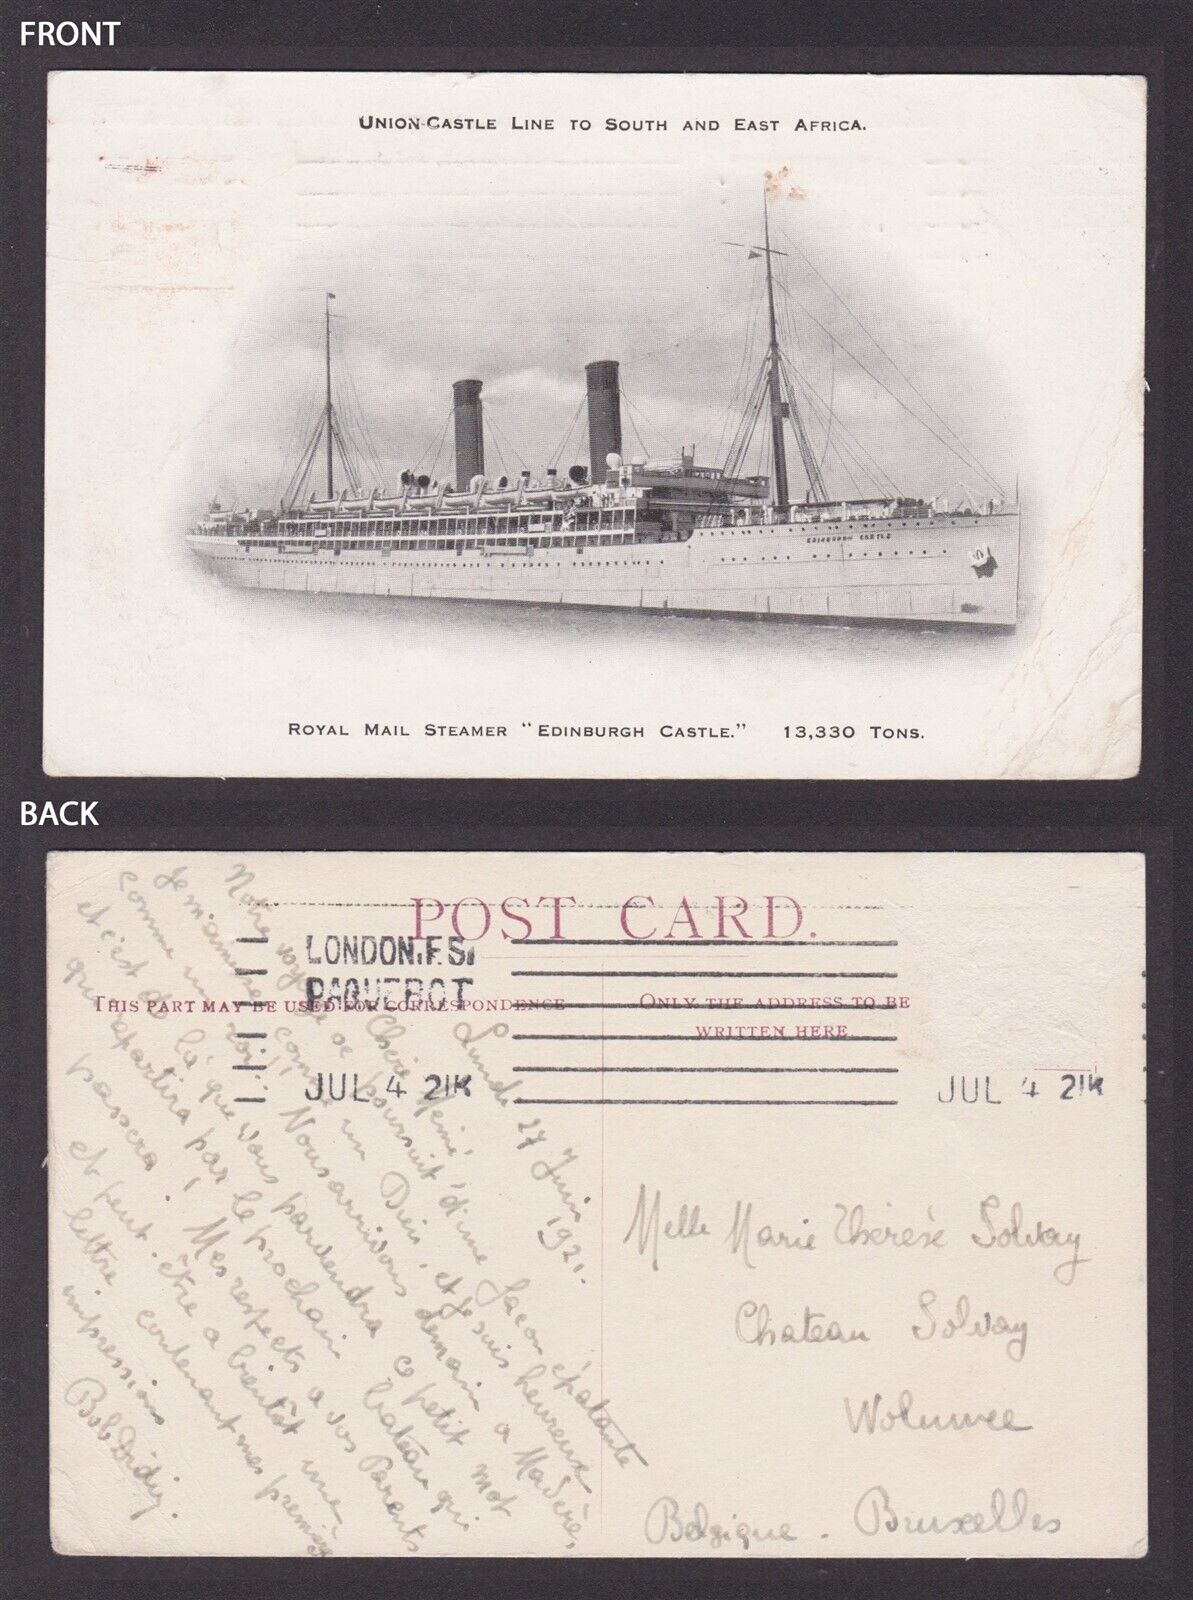 GREAT BRITAIN, Postcard, Union-Castle Line, Royal Mail Steamer Edinburgh Castle